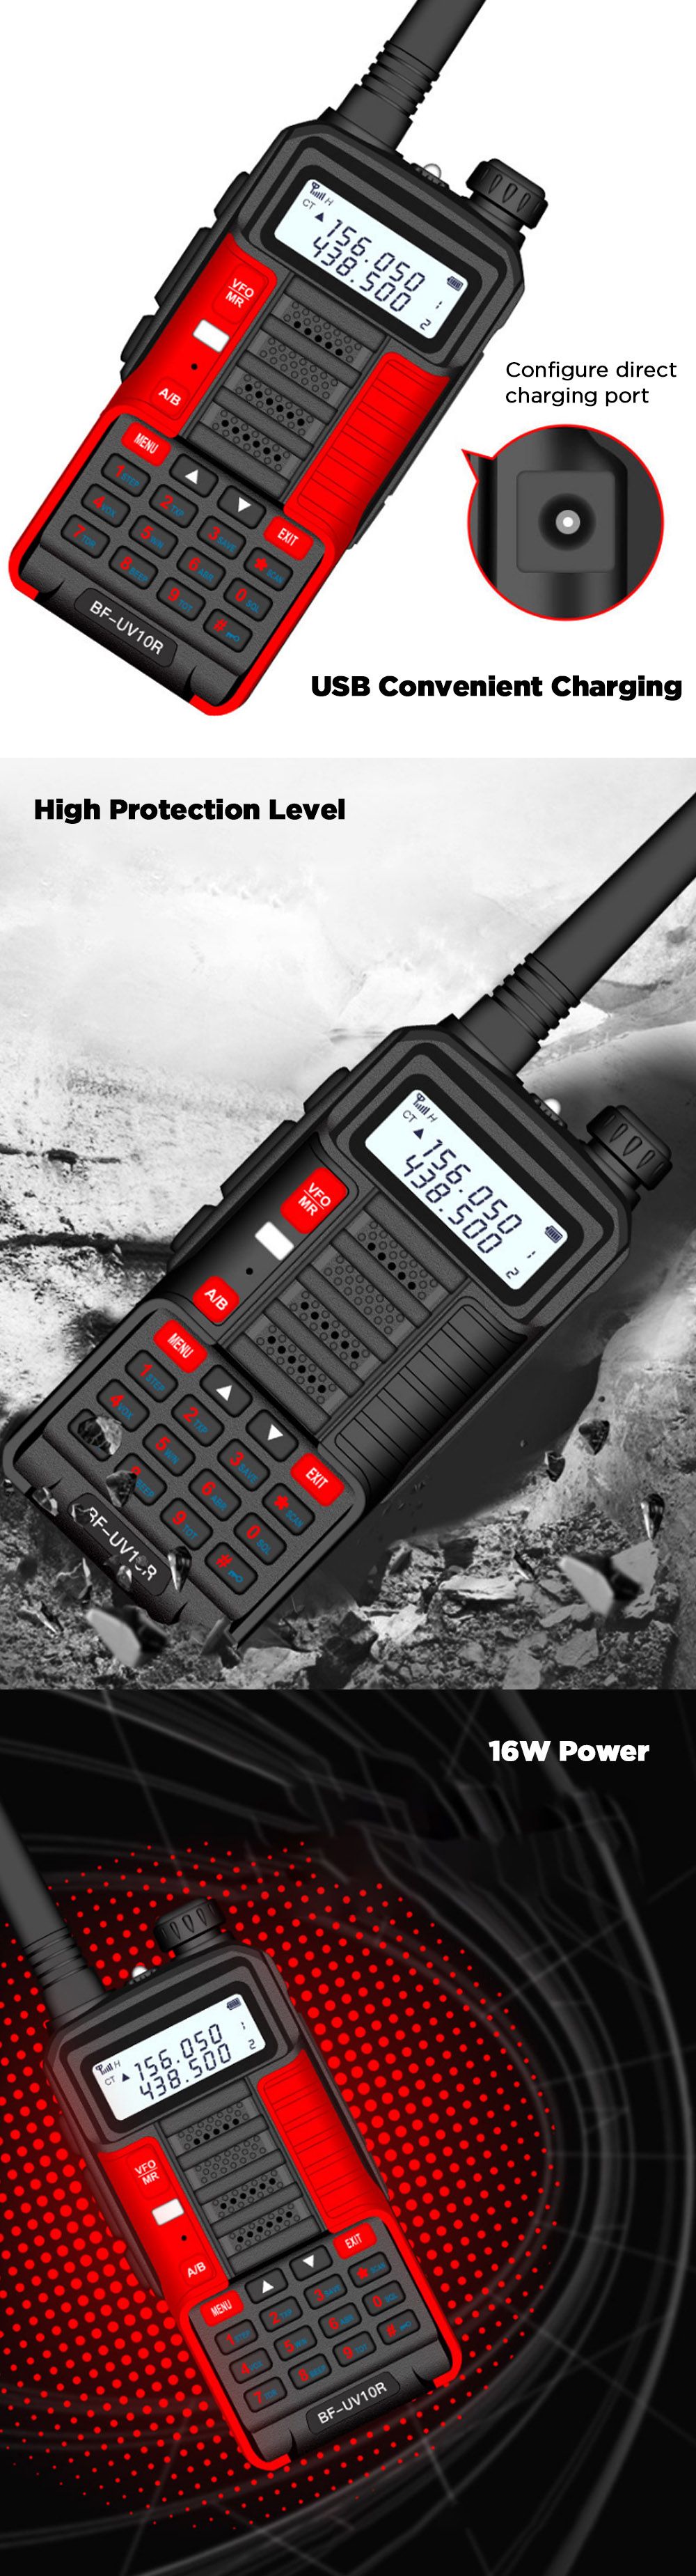 BAOFENG-BF-UV10R-5800mAh-10W-Two-way-Handheld-Radio-UV-Dual-Blue-Walkie-Talkie-128-Channels-LED-Flas-1756380